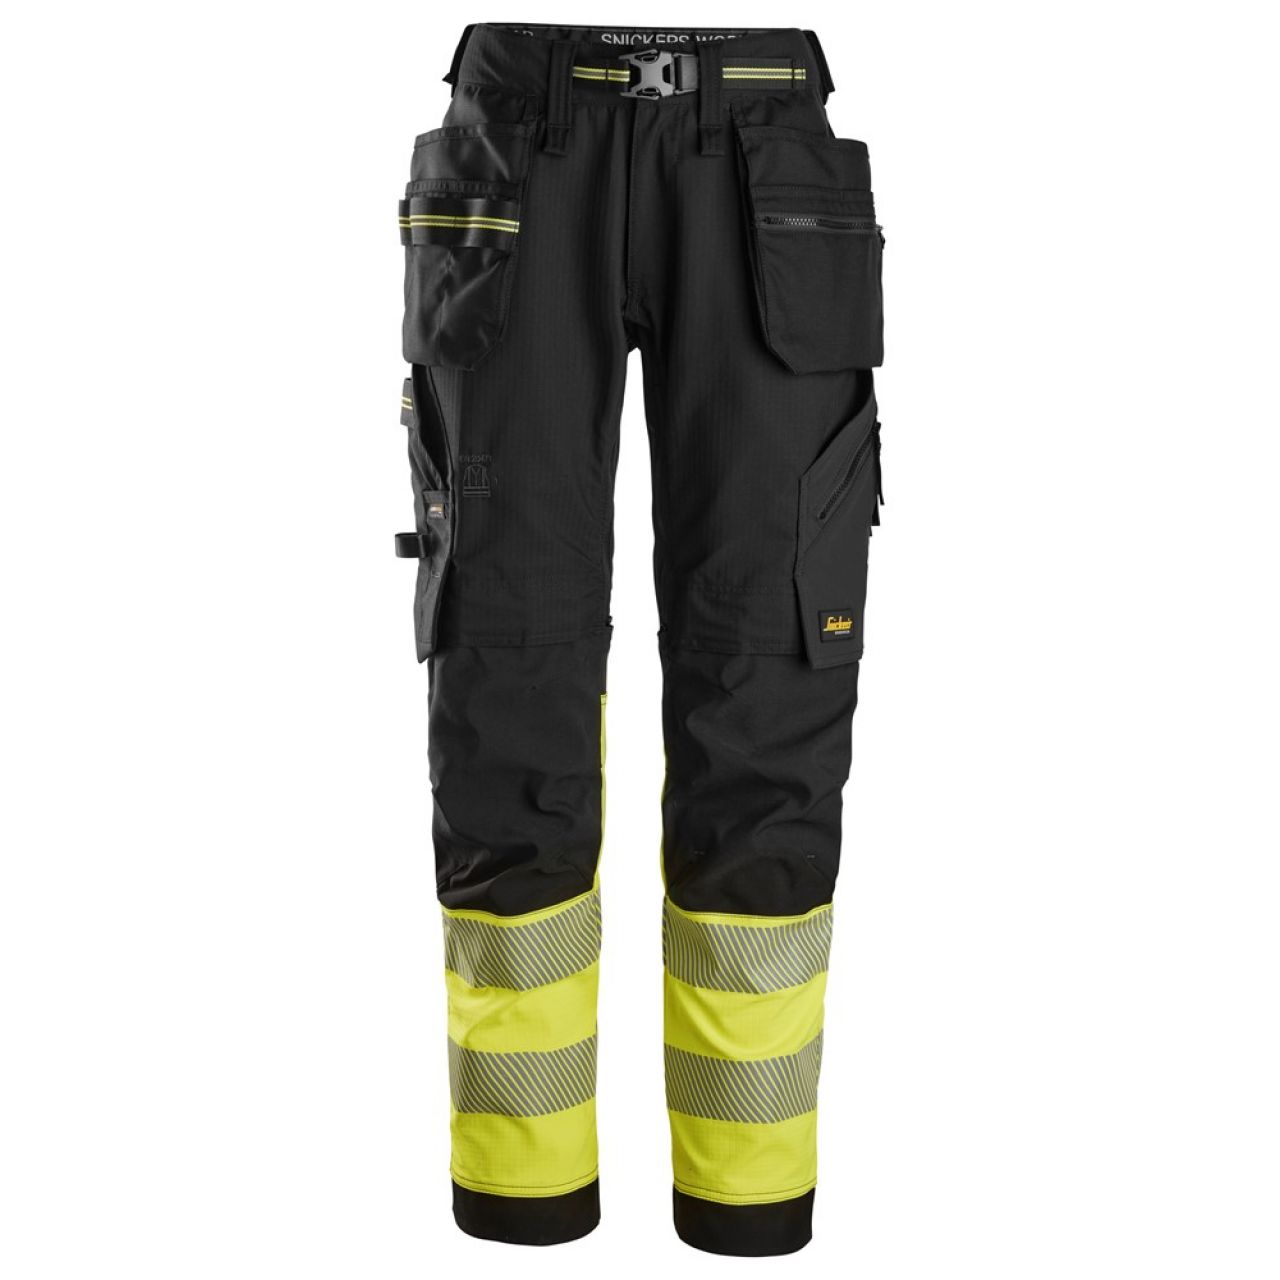 6934 Pantalones largos de trabajo elásticos de alta visibilidad clase 1 con bolsillos flotantes negro-amarillo talla 108